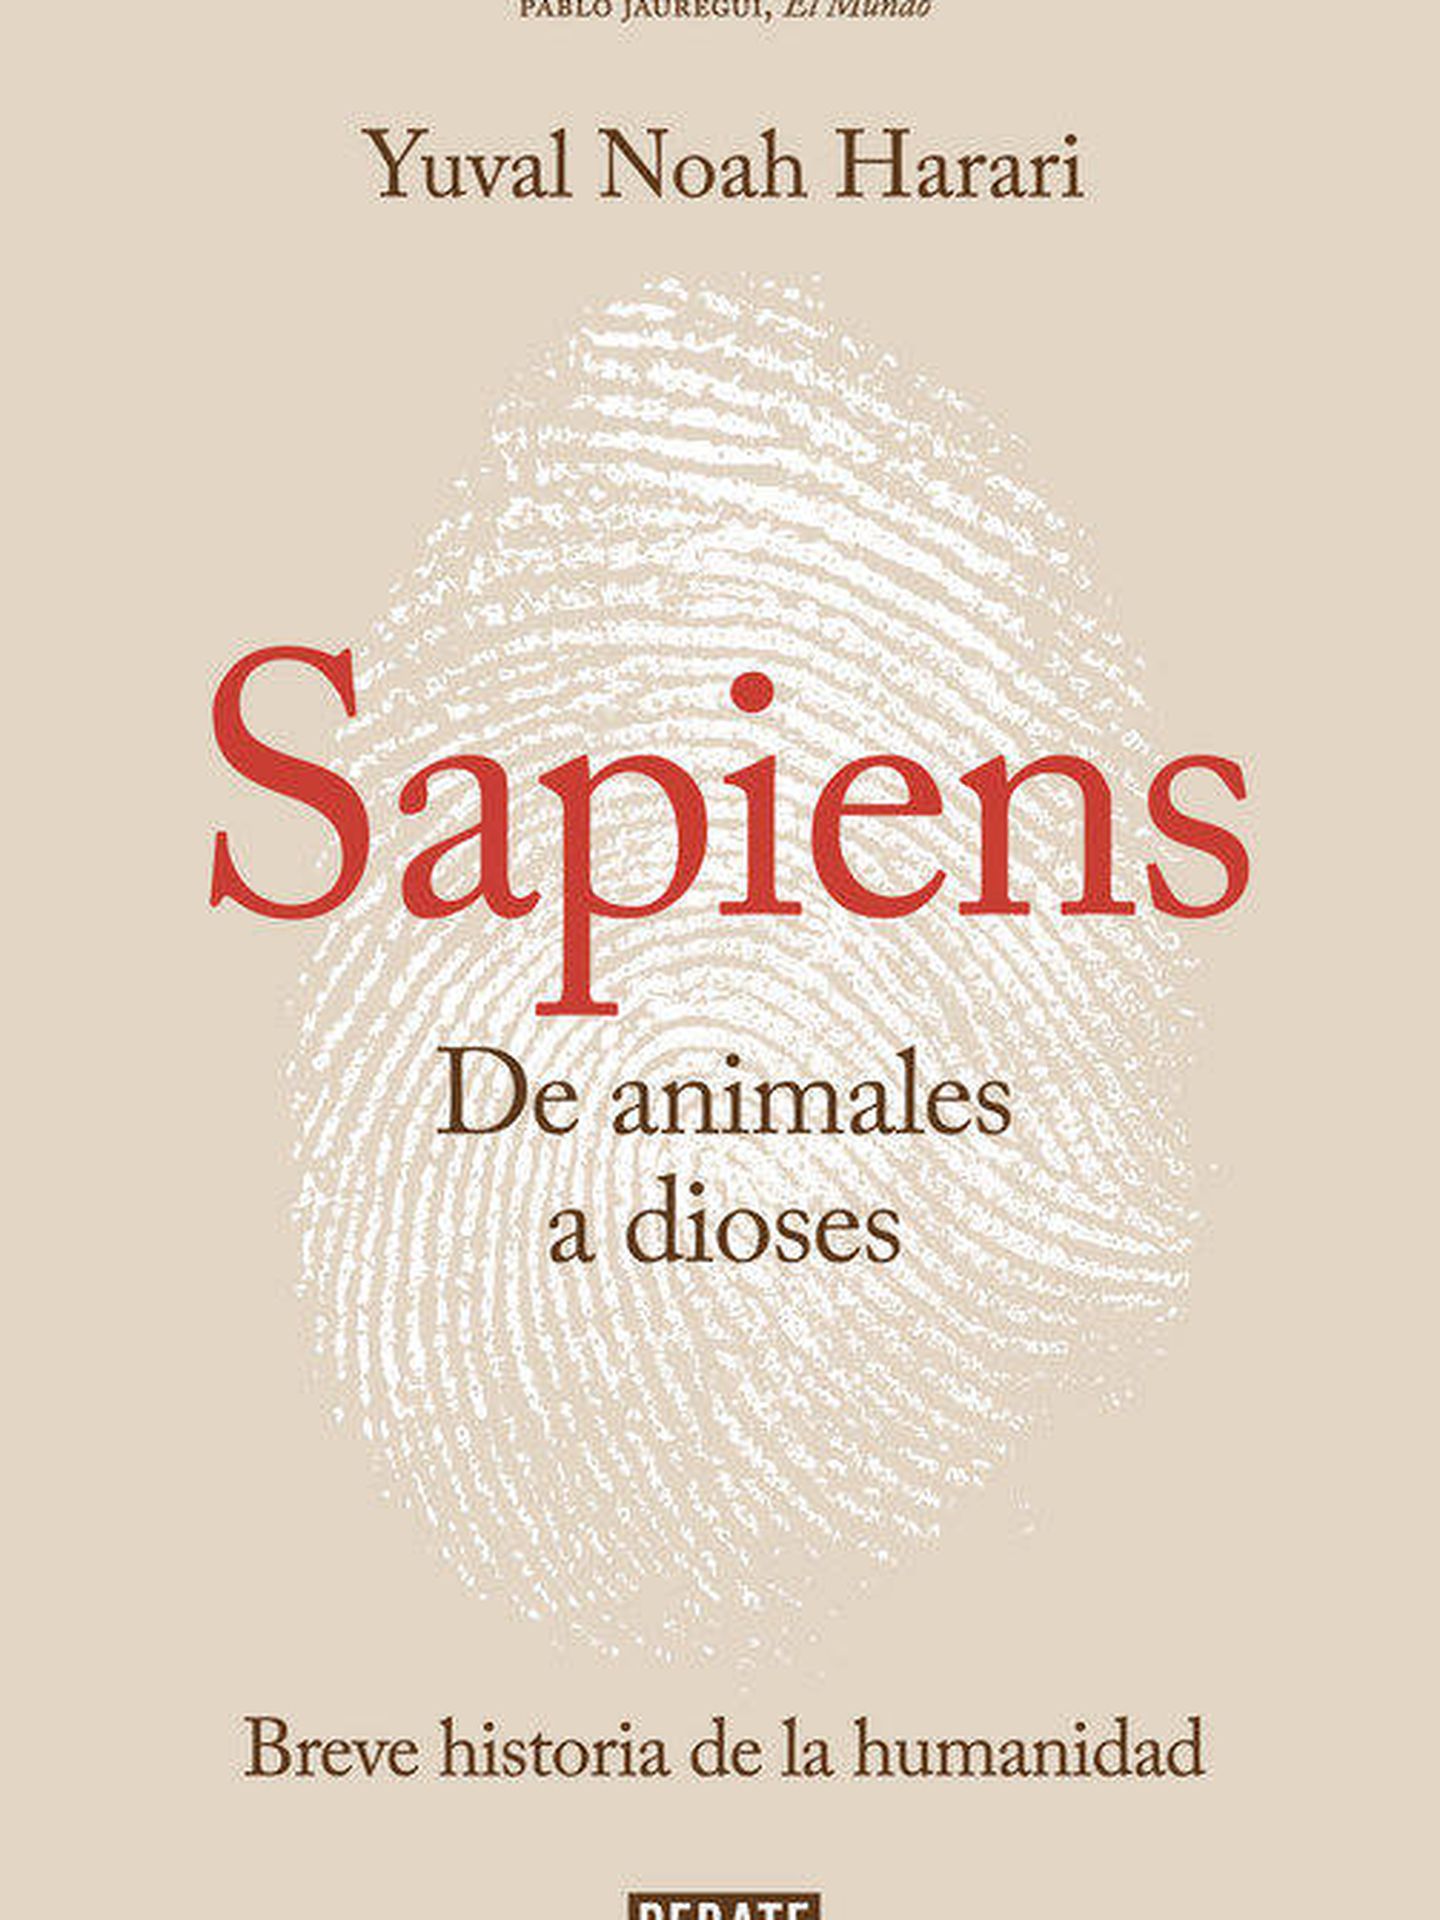 'Sapiens'.